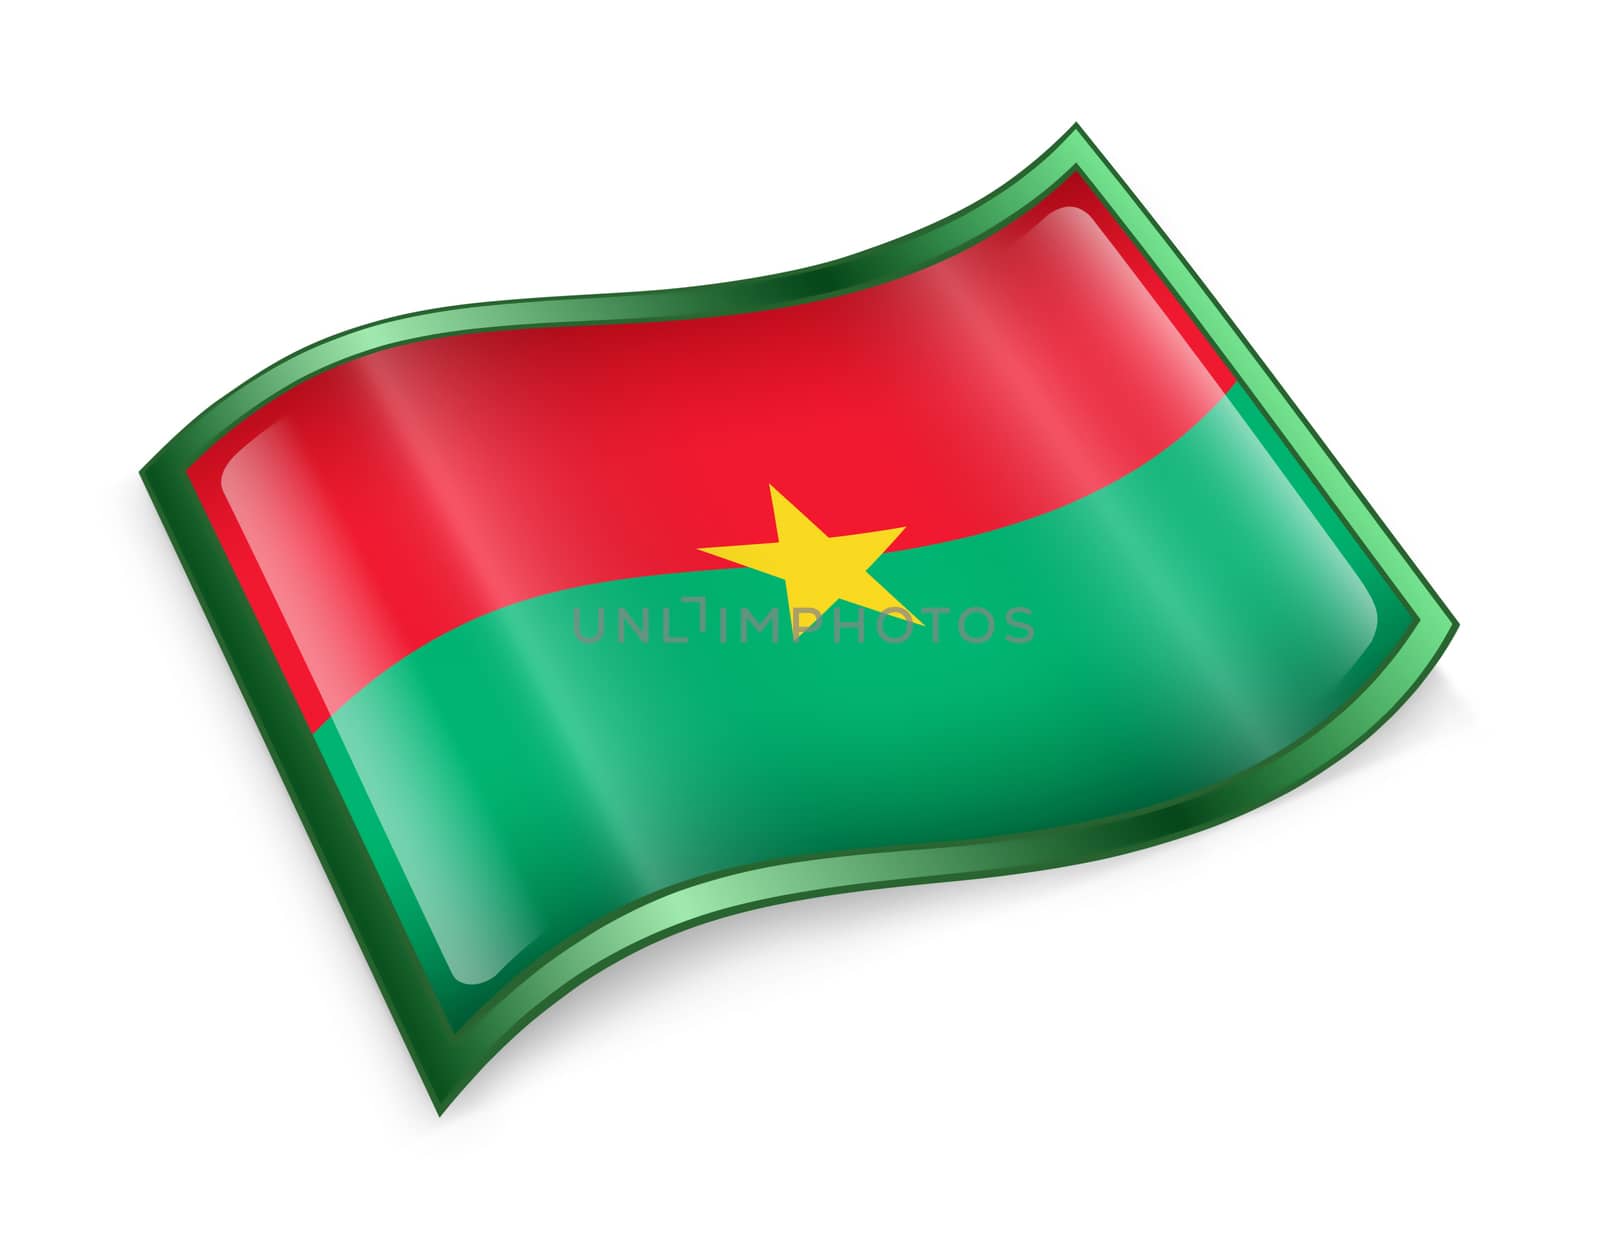 Burkina Faso flag icon. by zeffss